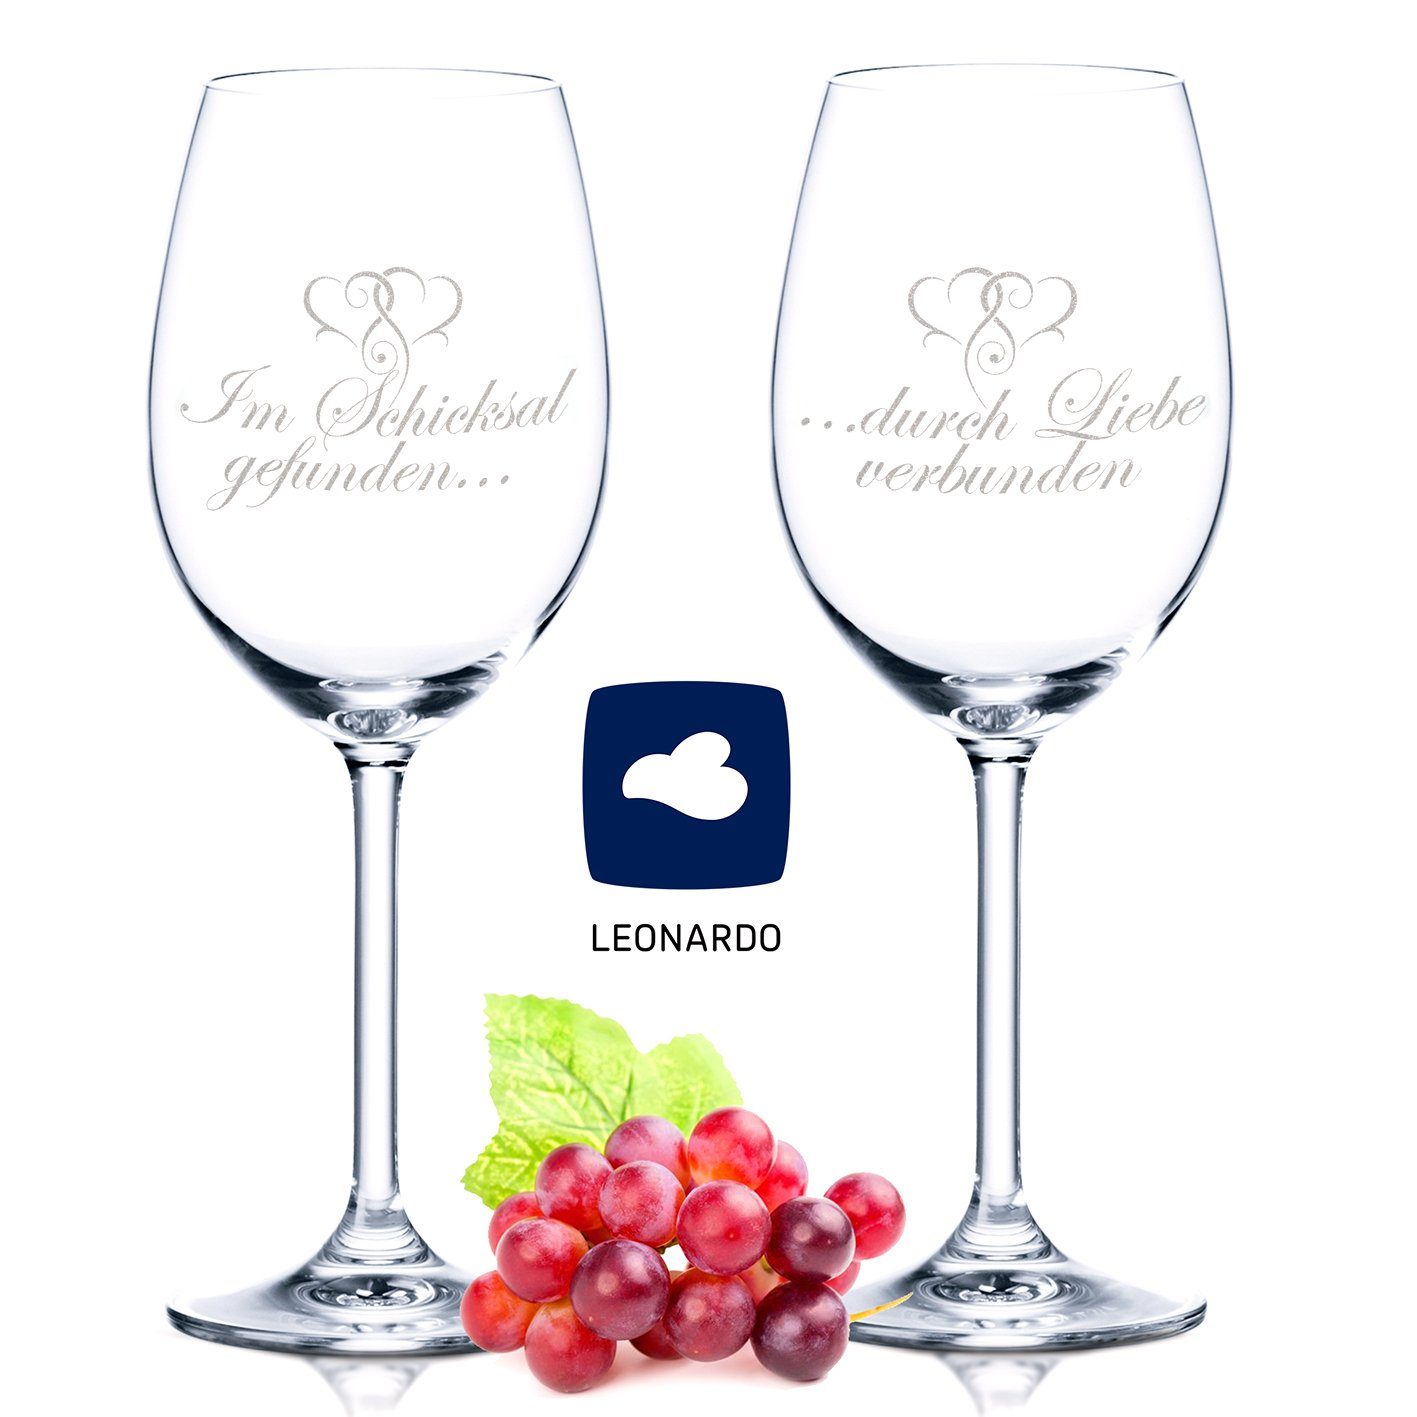 GRAVURZEILE Rotweinglas Leonardo Daylie Weinglas - Im Schicksal gefunden  durch Liebe verbunden, Glas, graviertes Geschenk für Paare zur Verlobung &  Hochzeit